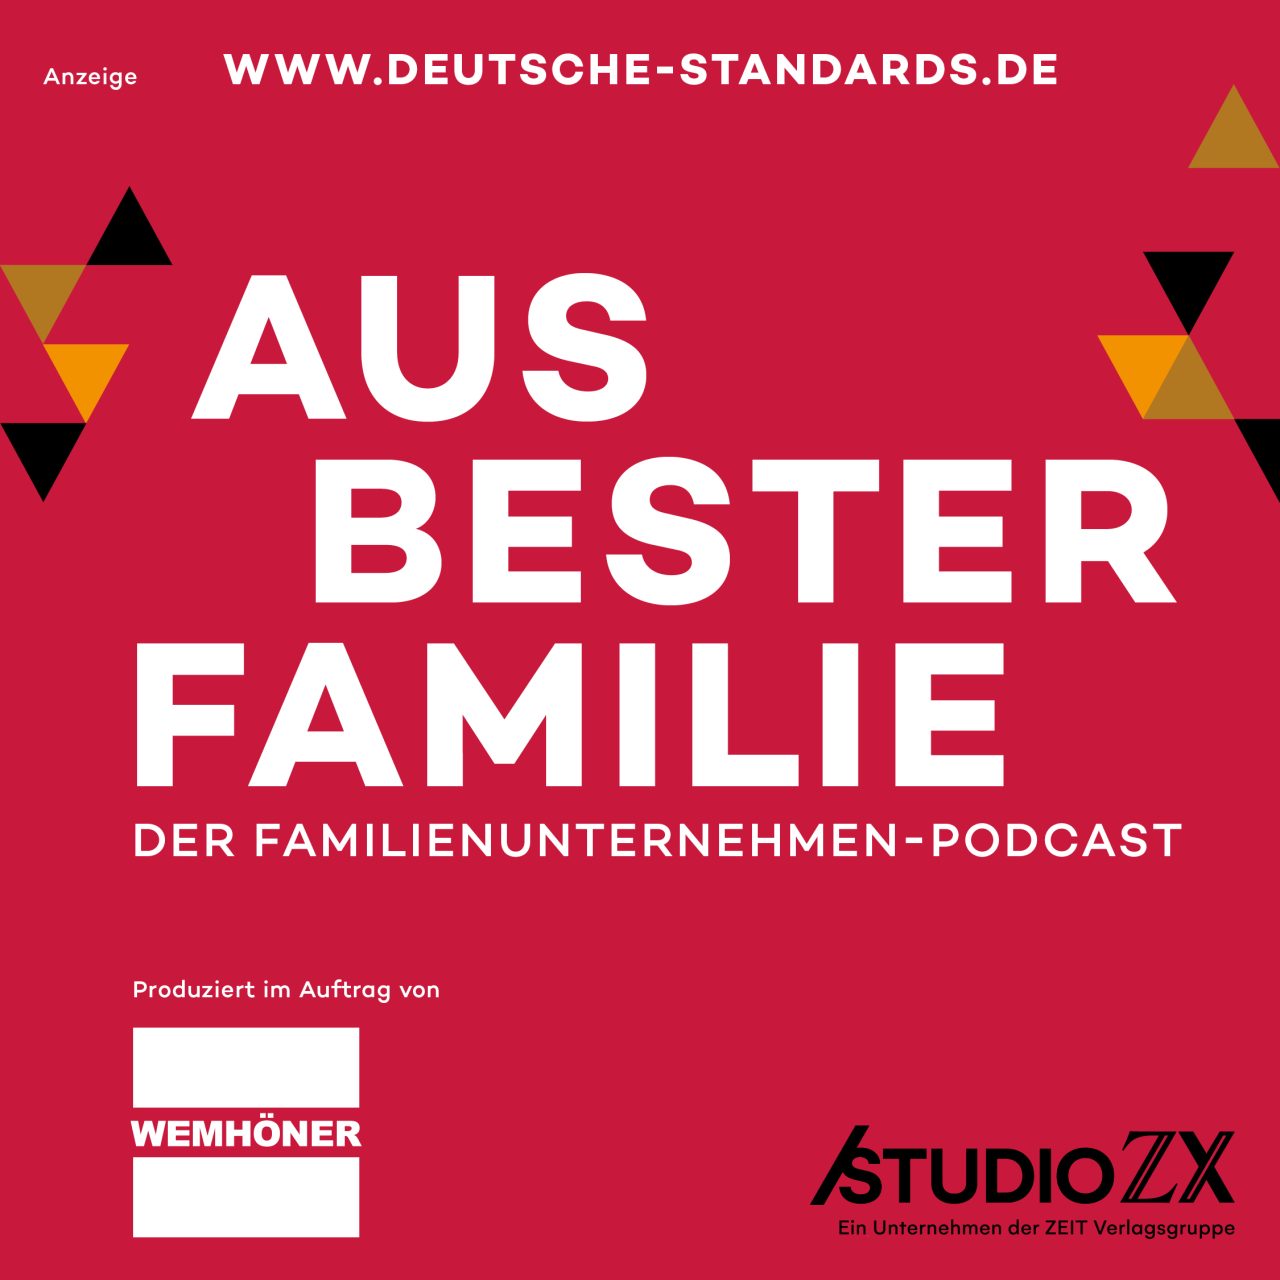 Der Familienunternehmen-Podcast mit Wemhöner